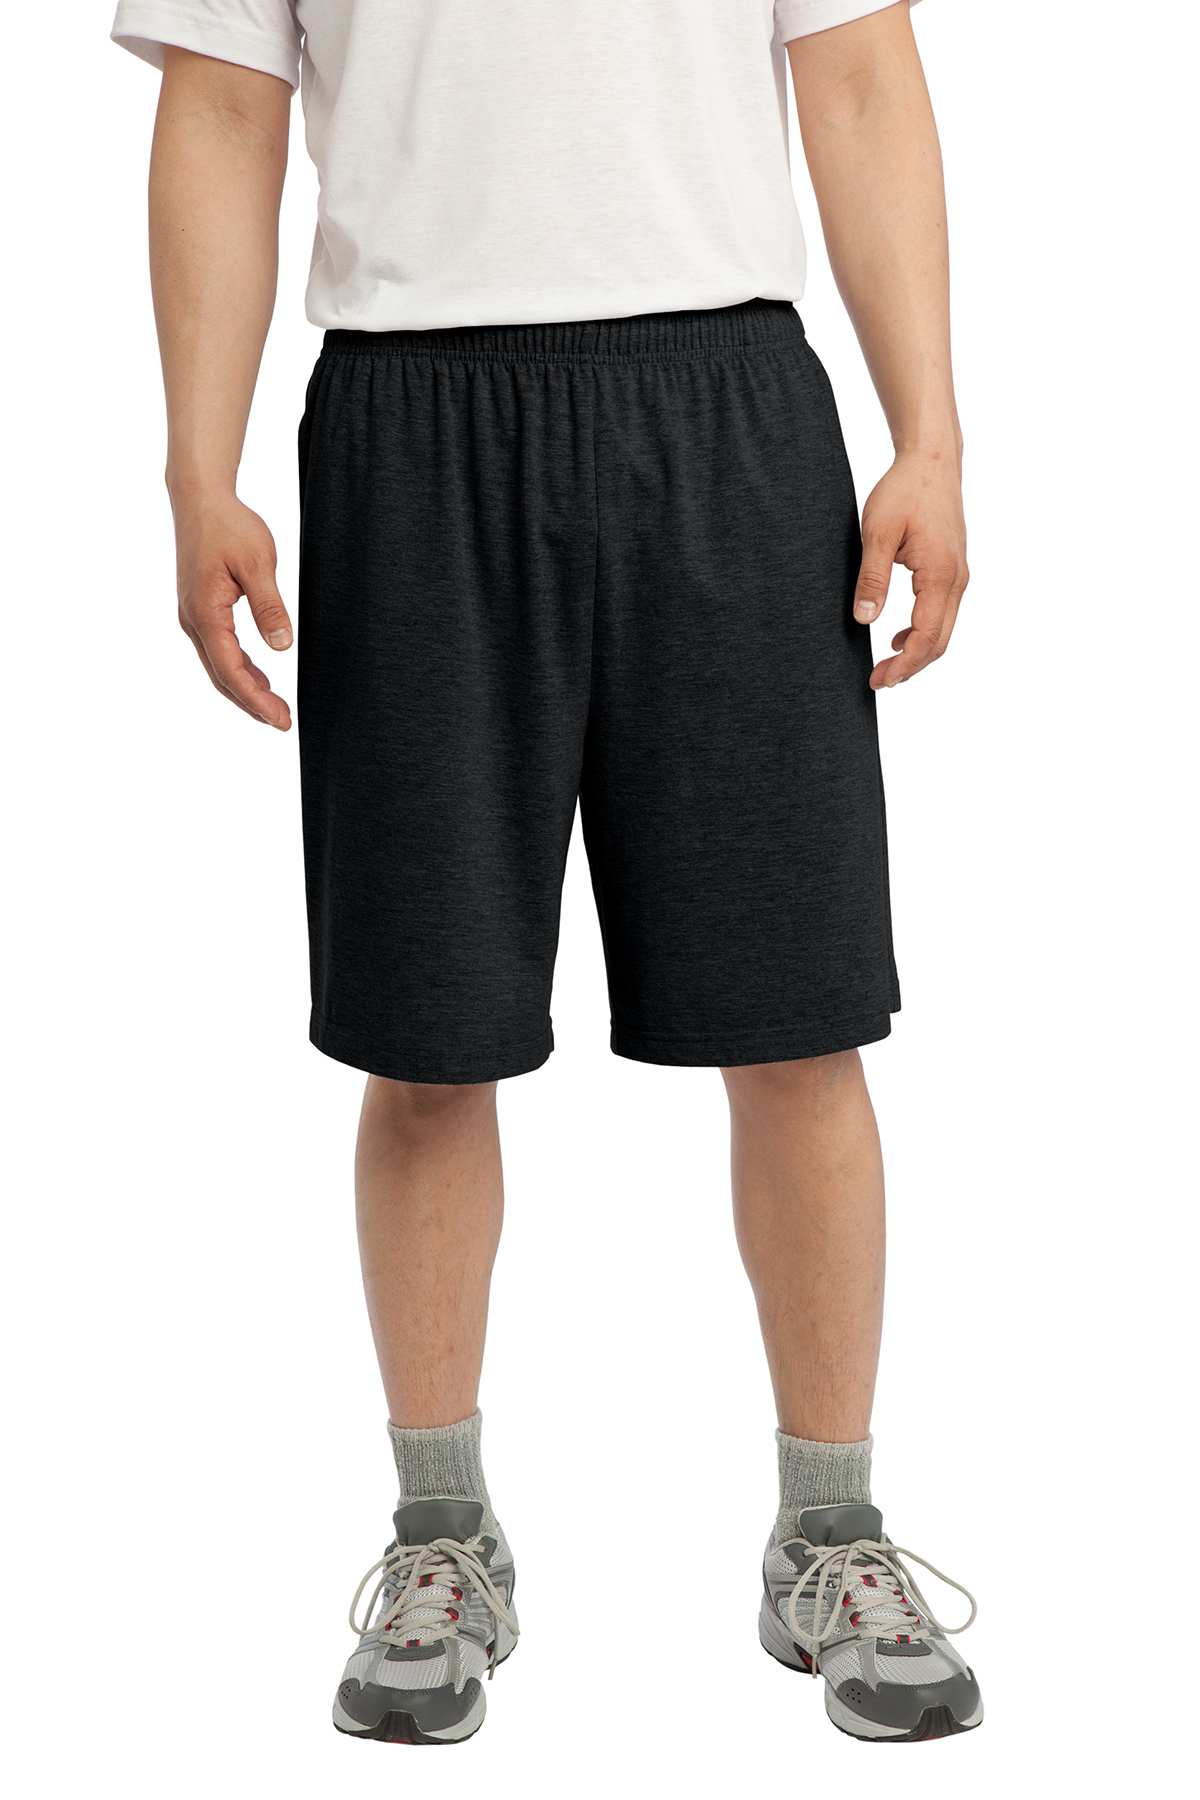 Sport-Tek® ST310 Jersey Knit Short with Pockets